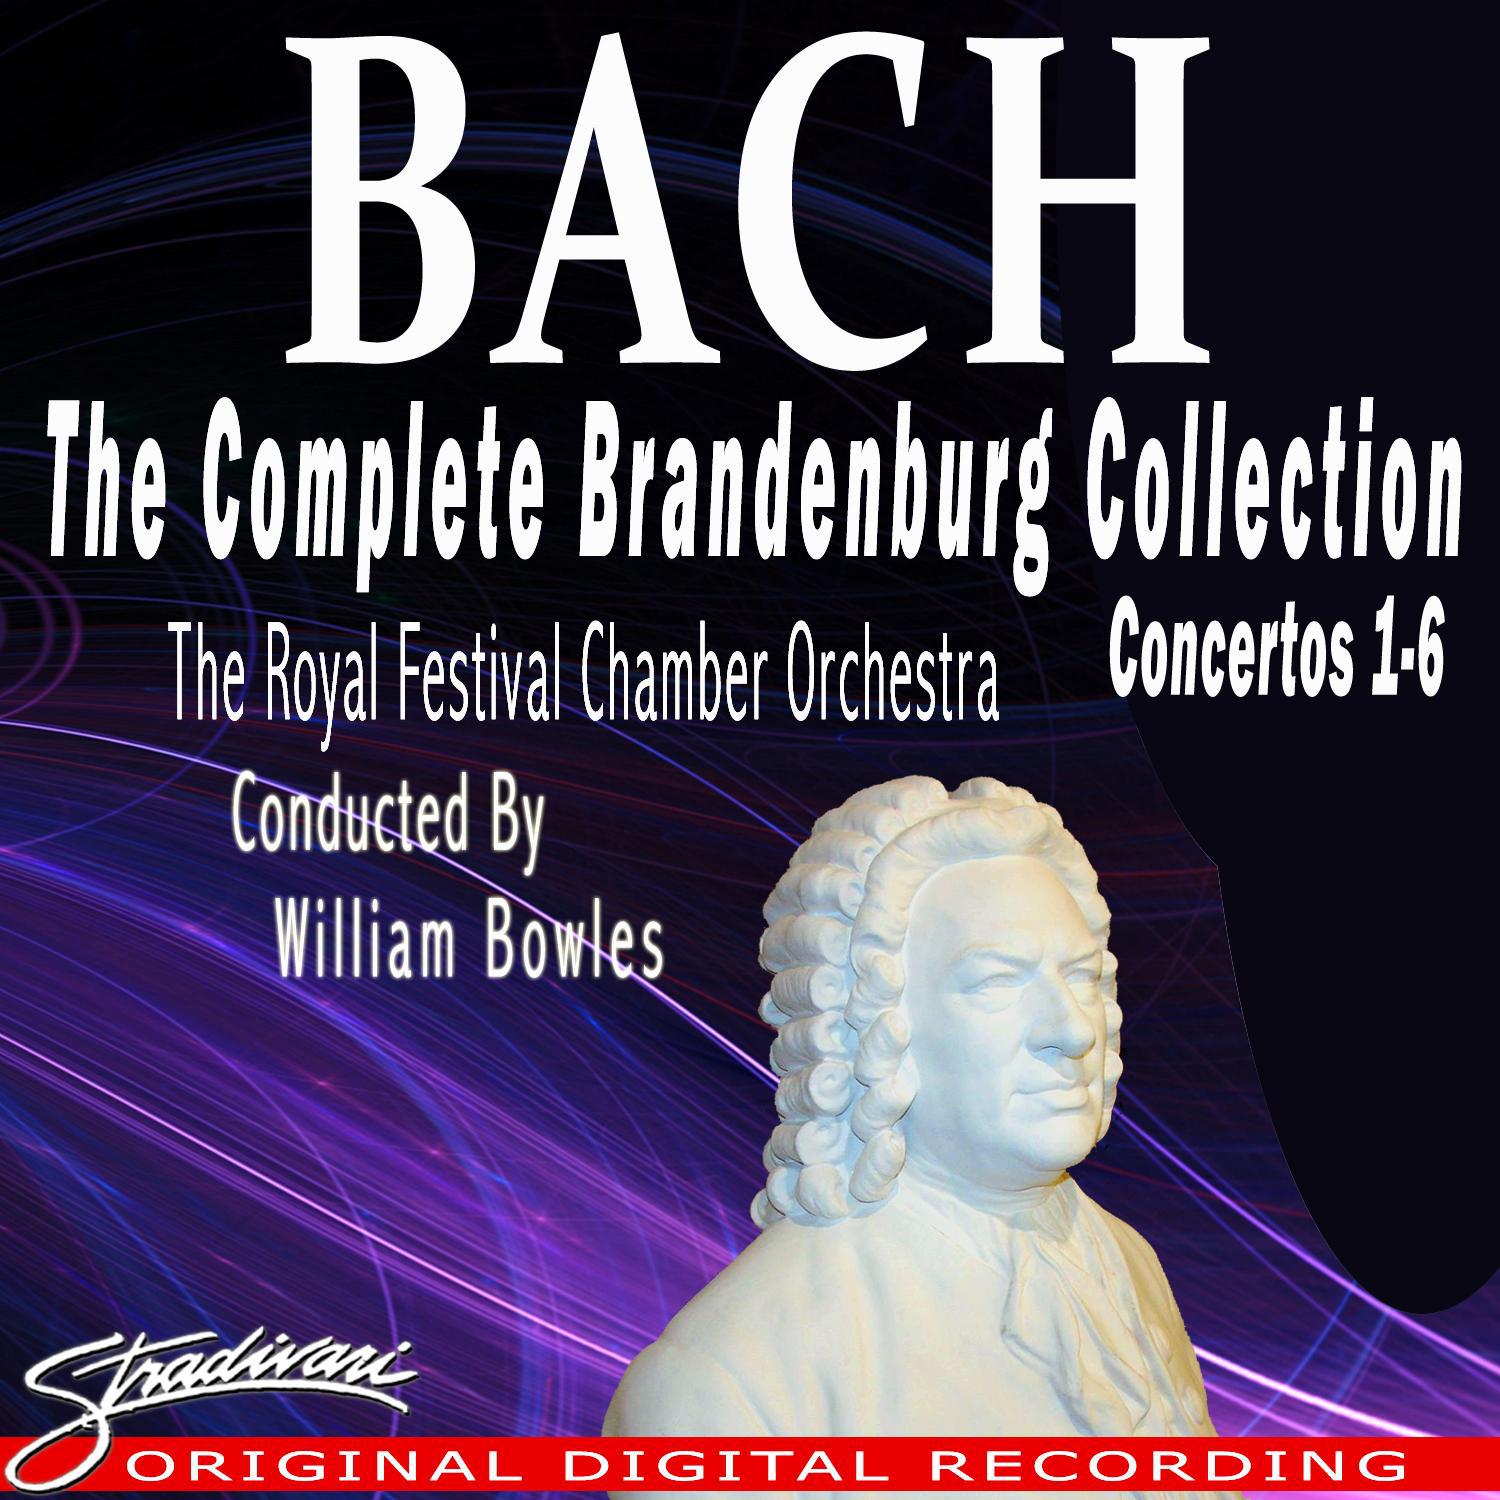 Bach: The Complete Brandenburg Collection, Concertos Nos. 1-6